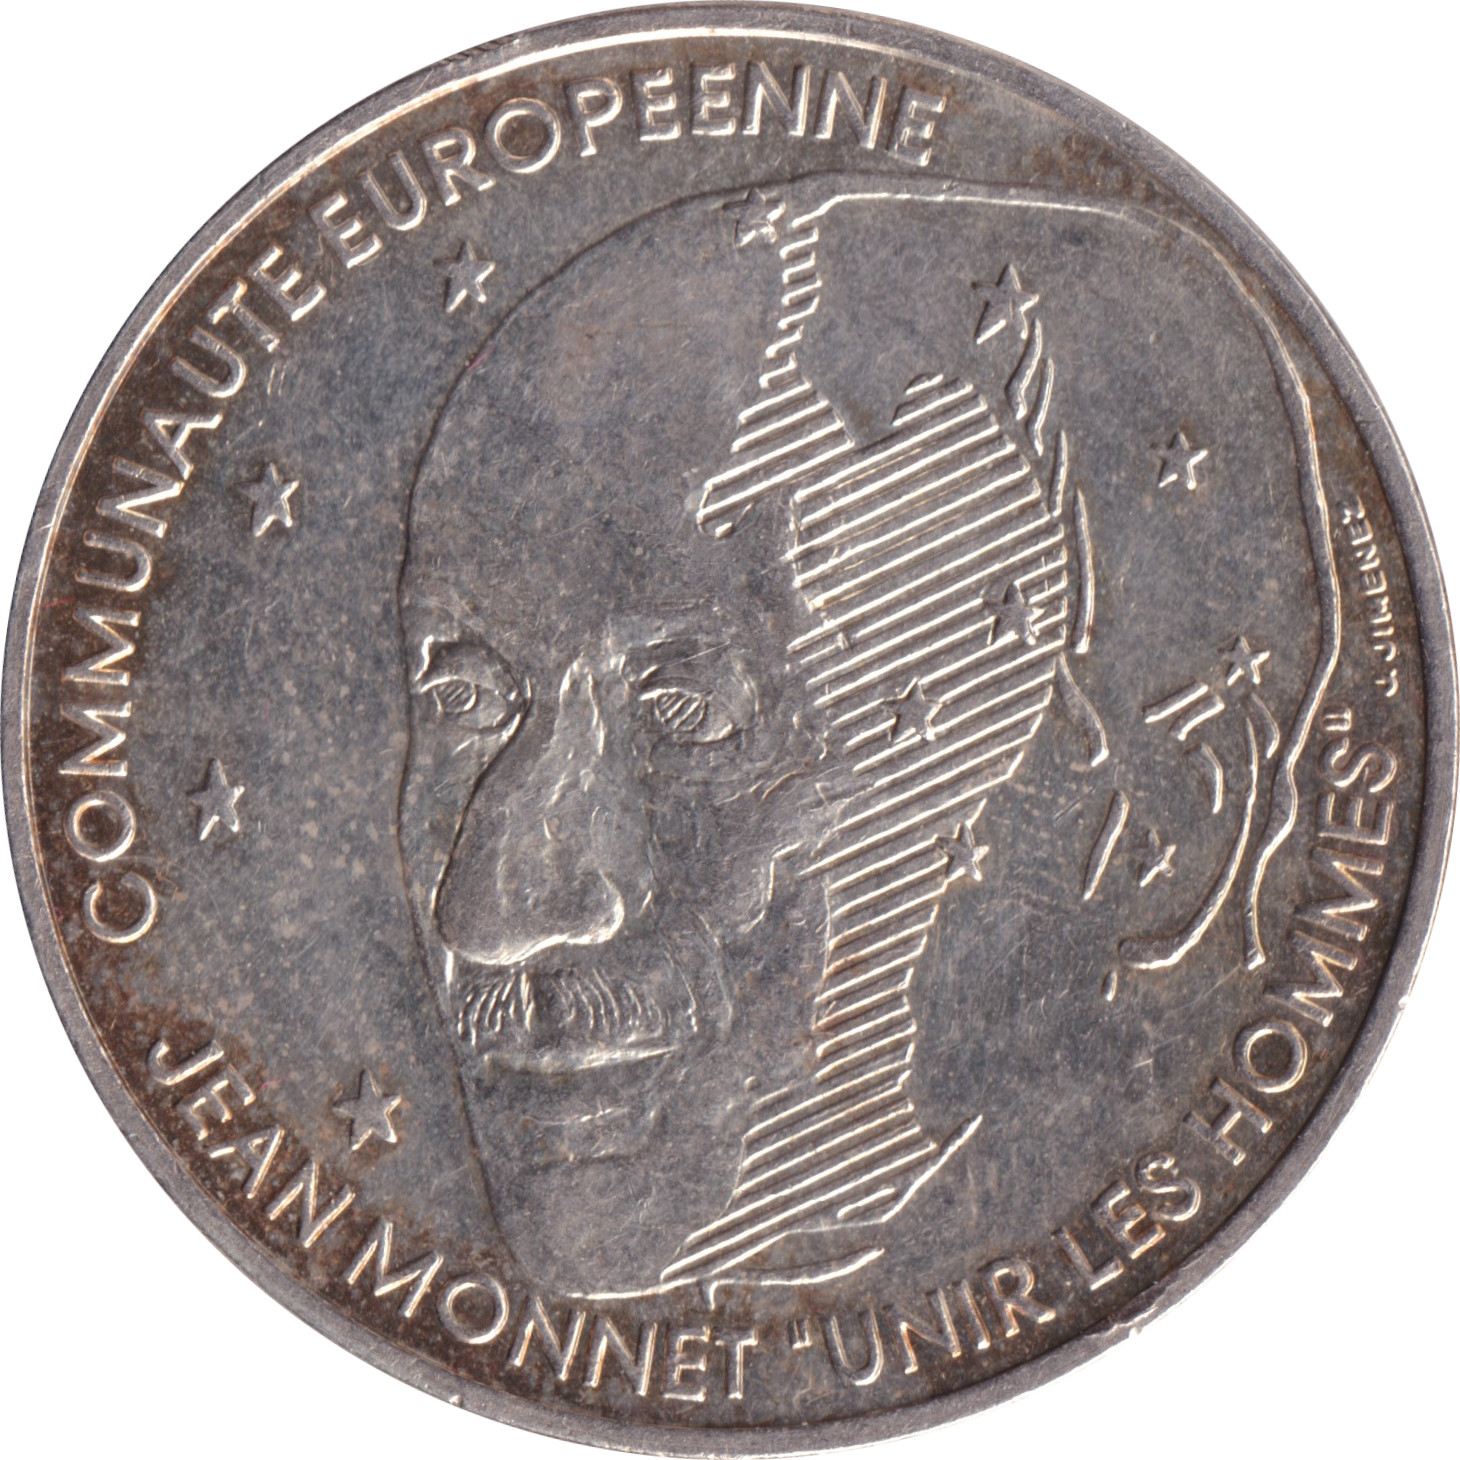 100 francs - Jean Monnet